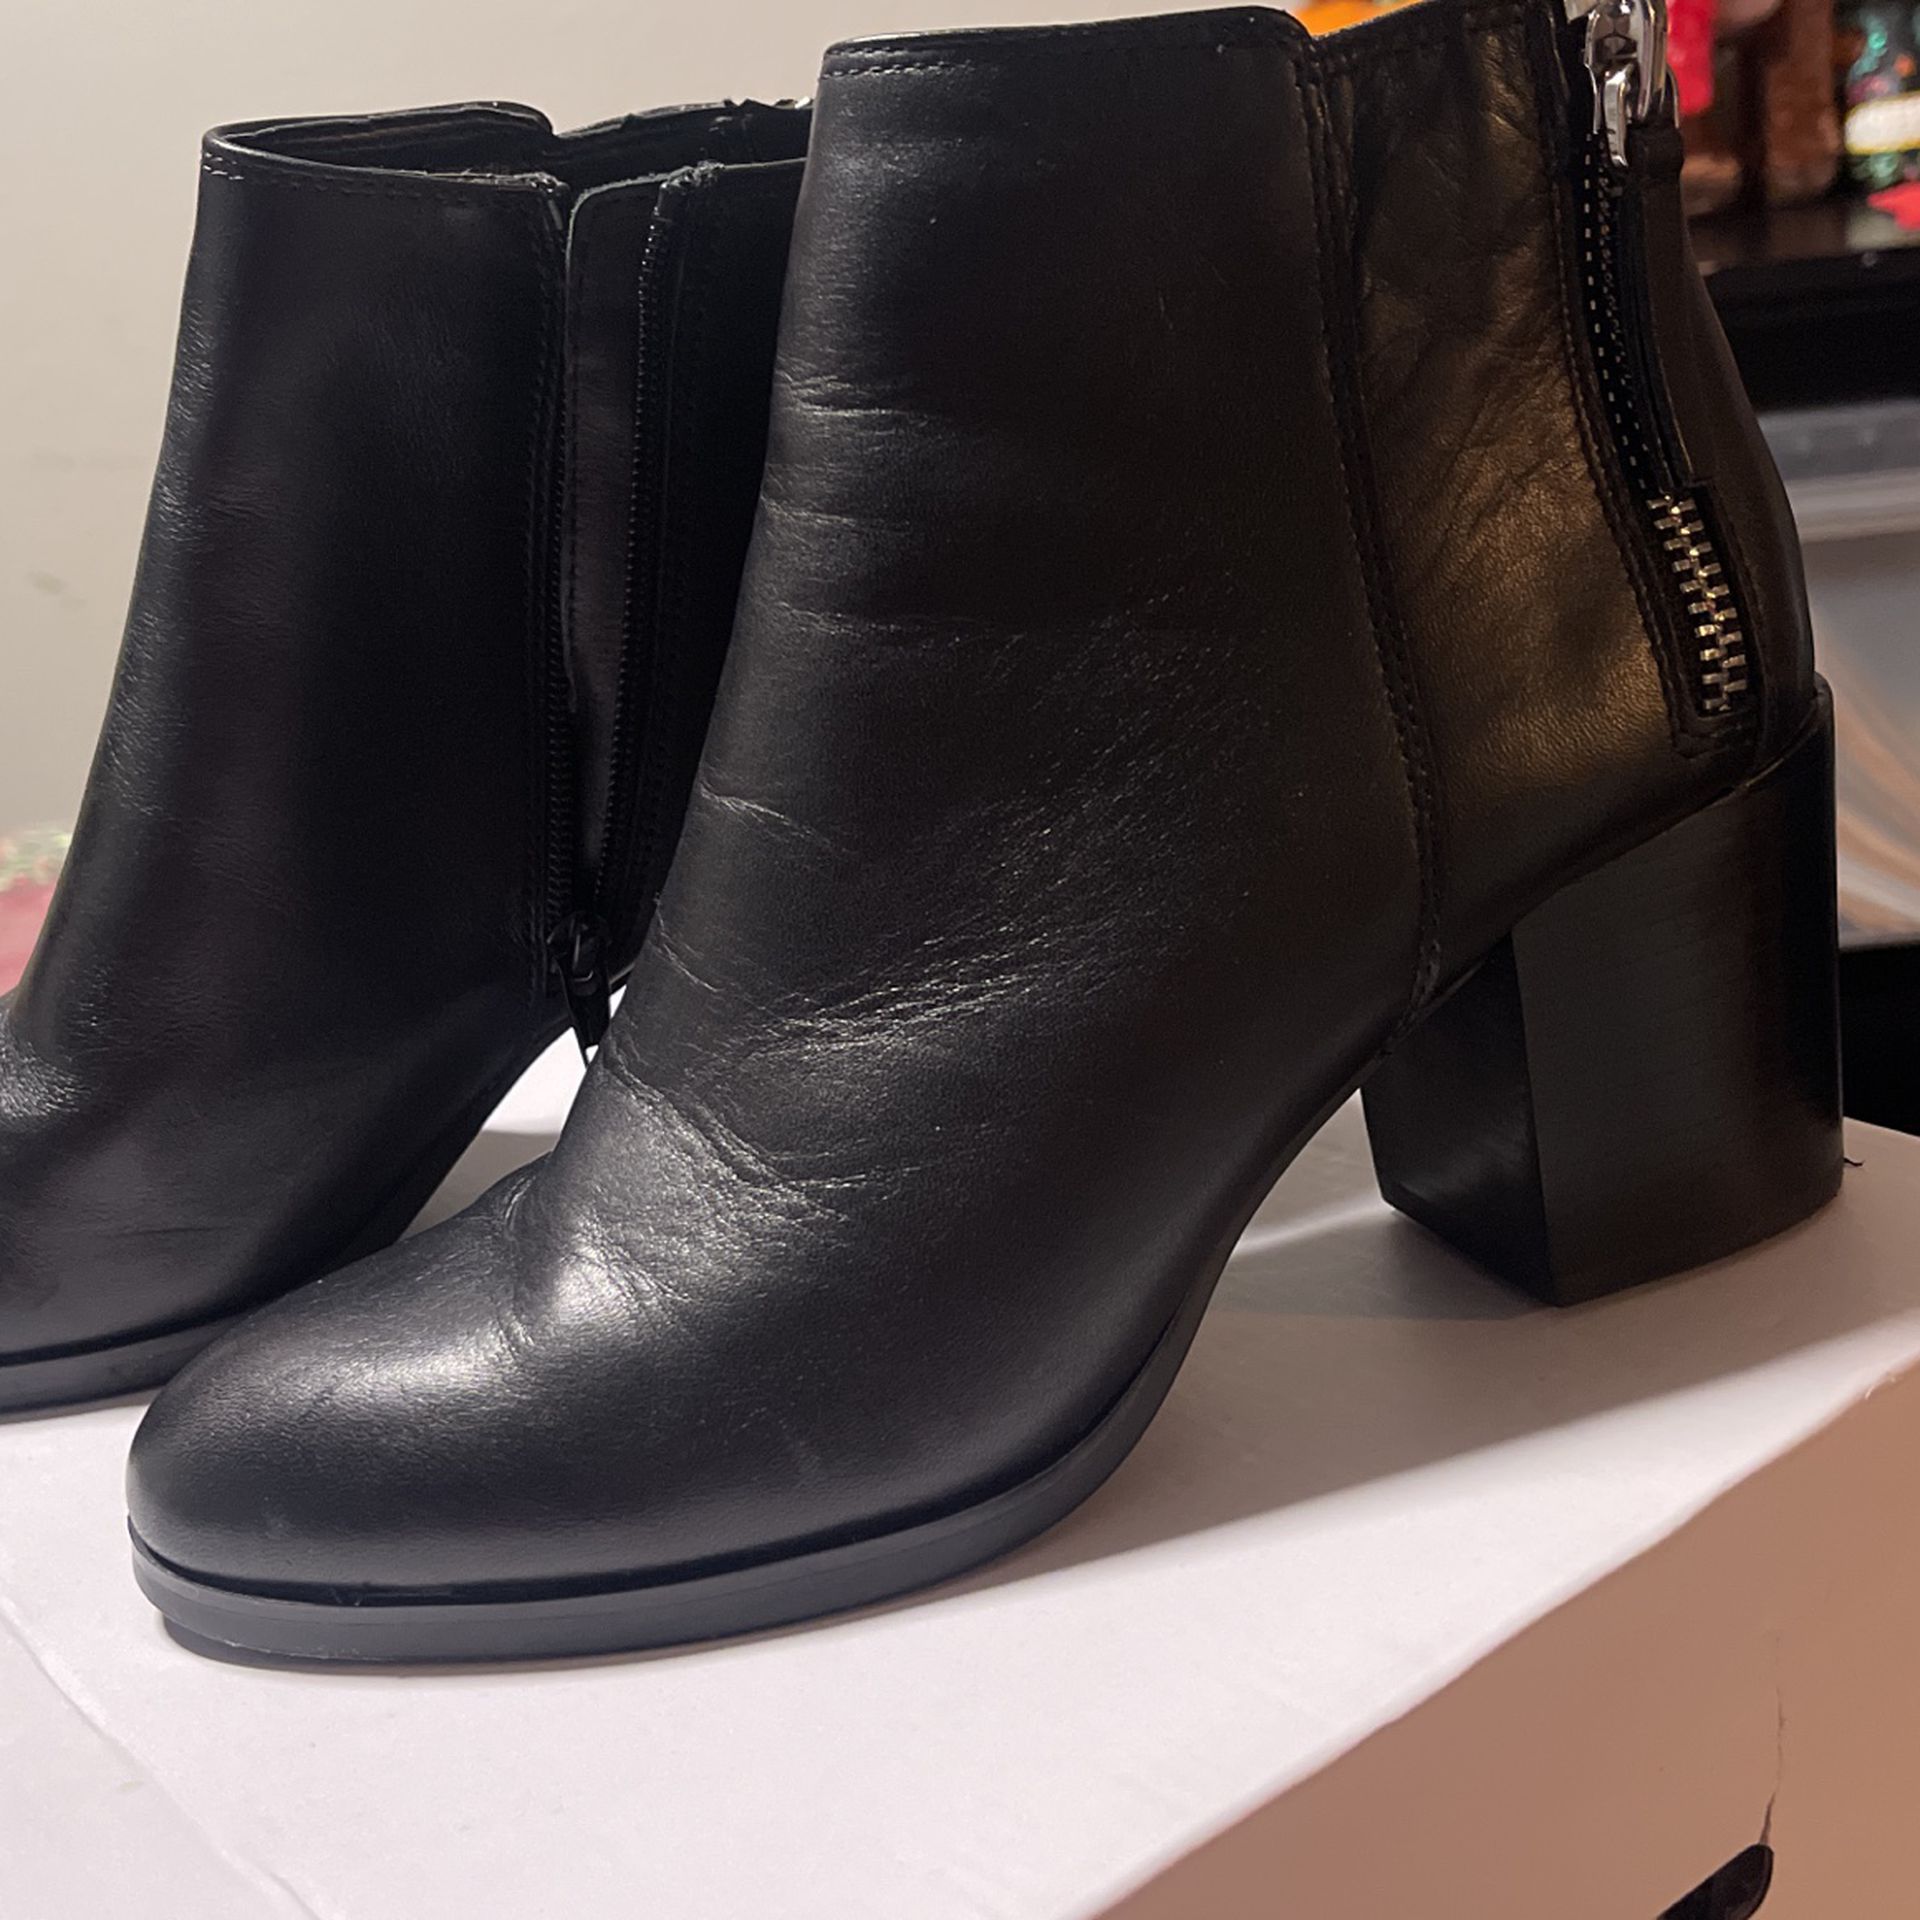 Nemlig Ofte talt Preference Women Aldo Boots for Sale in Kent, WA - OfferUp